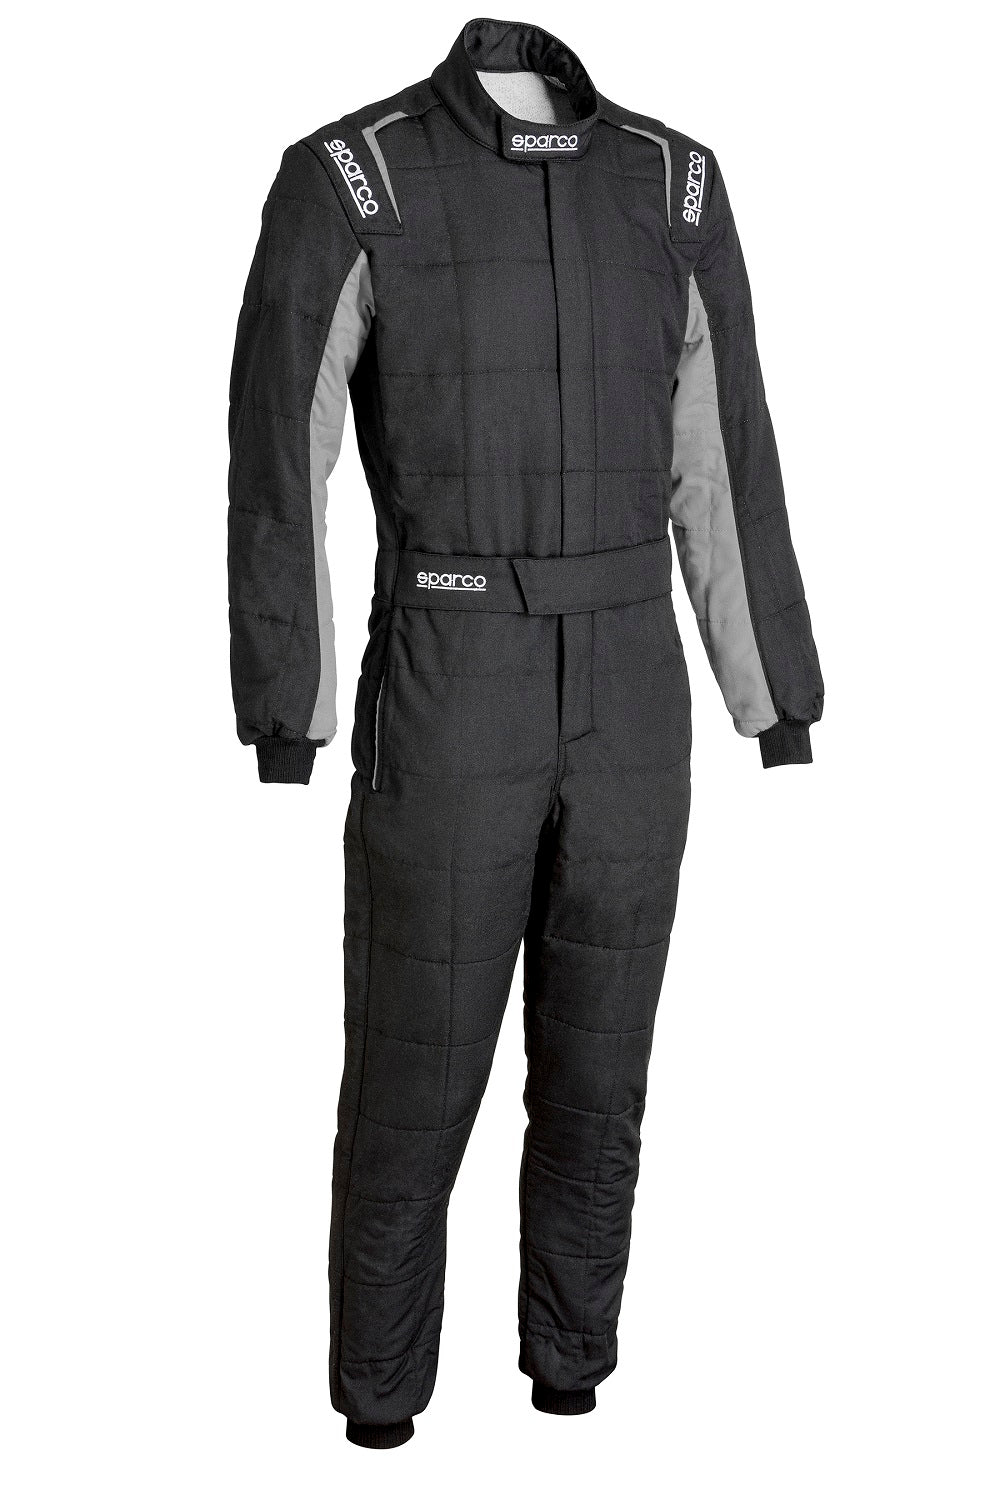 Sparco Conquest 3.0 Race Suit Black / Grey Front Image